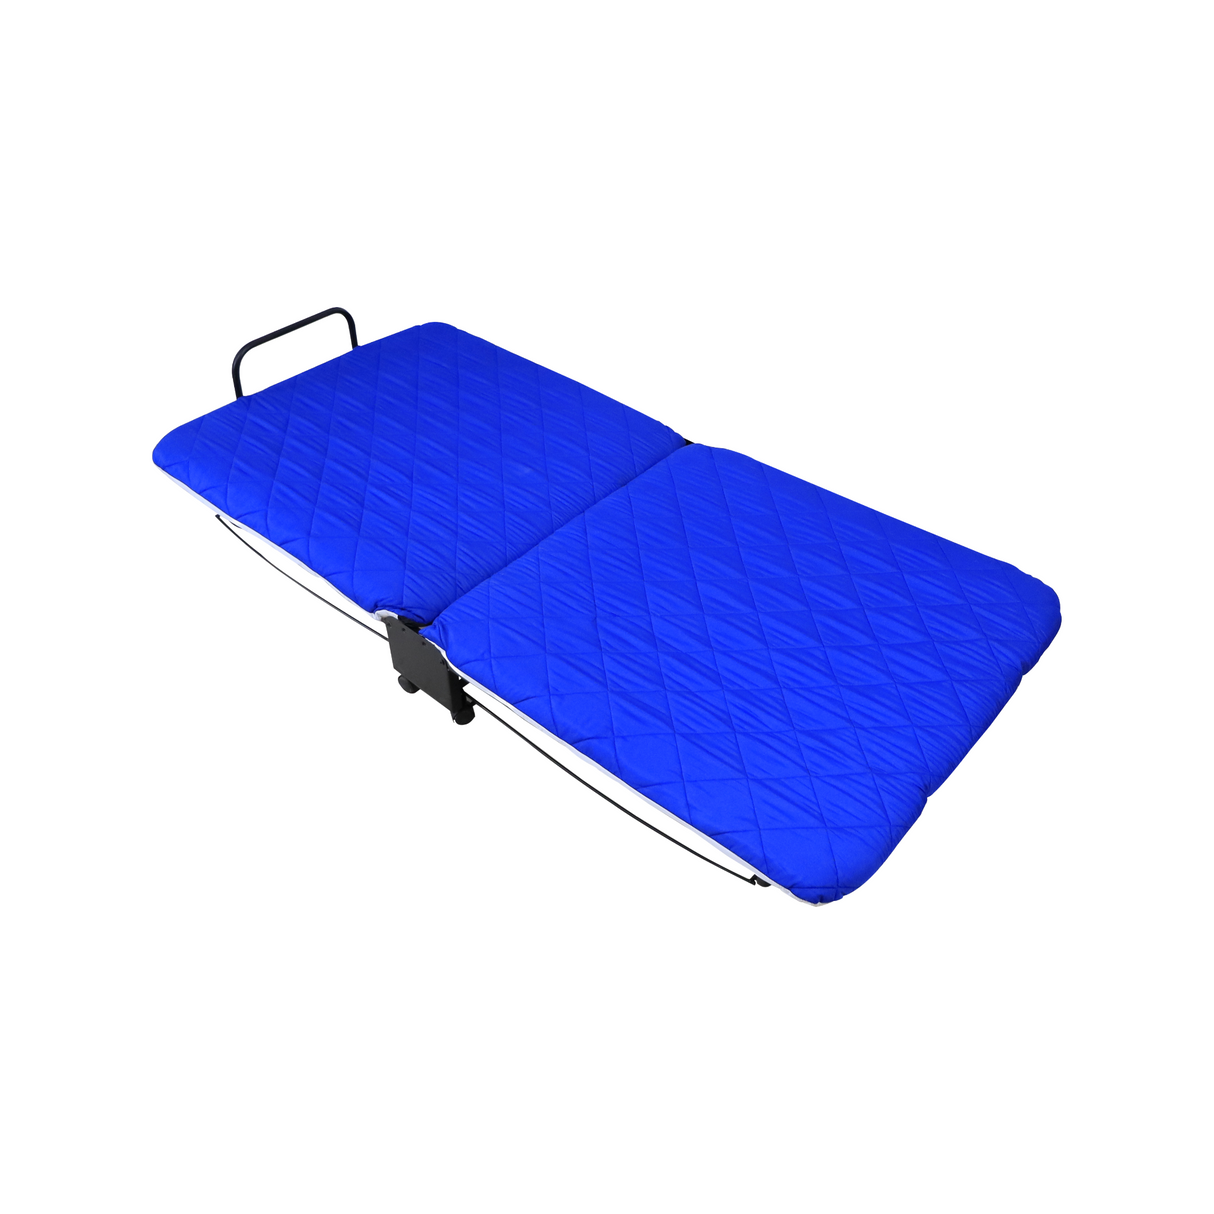 OSAKA Folding Bed Affordahome